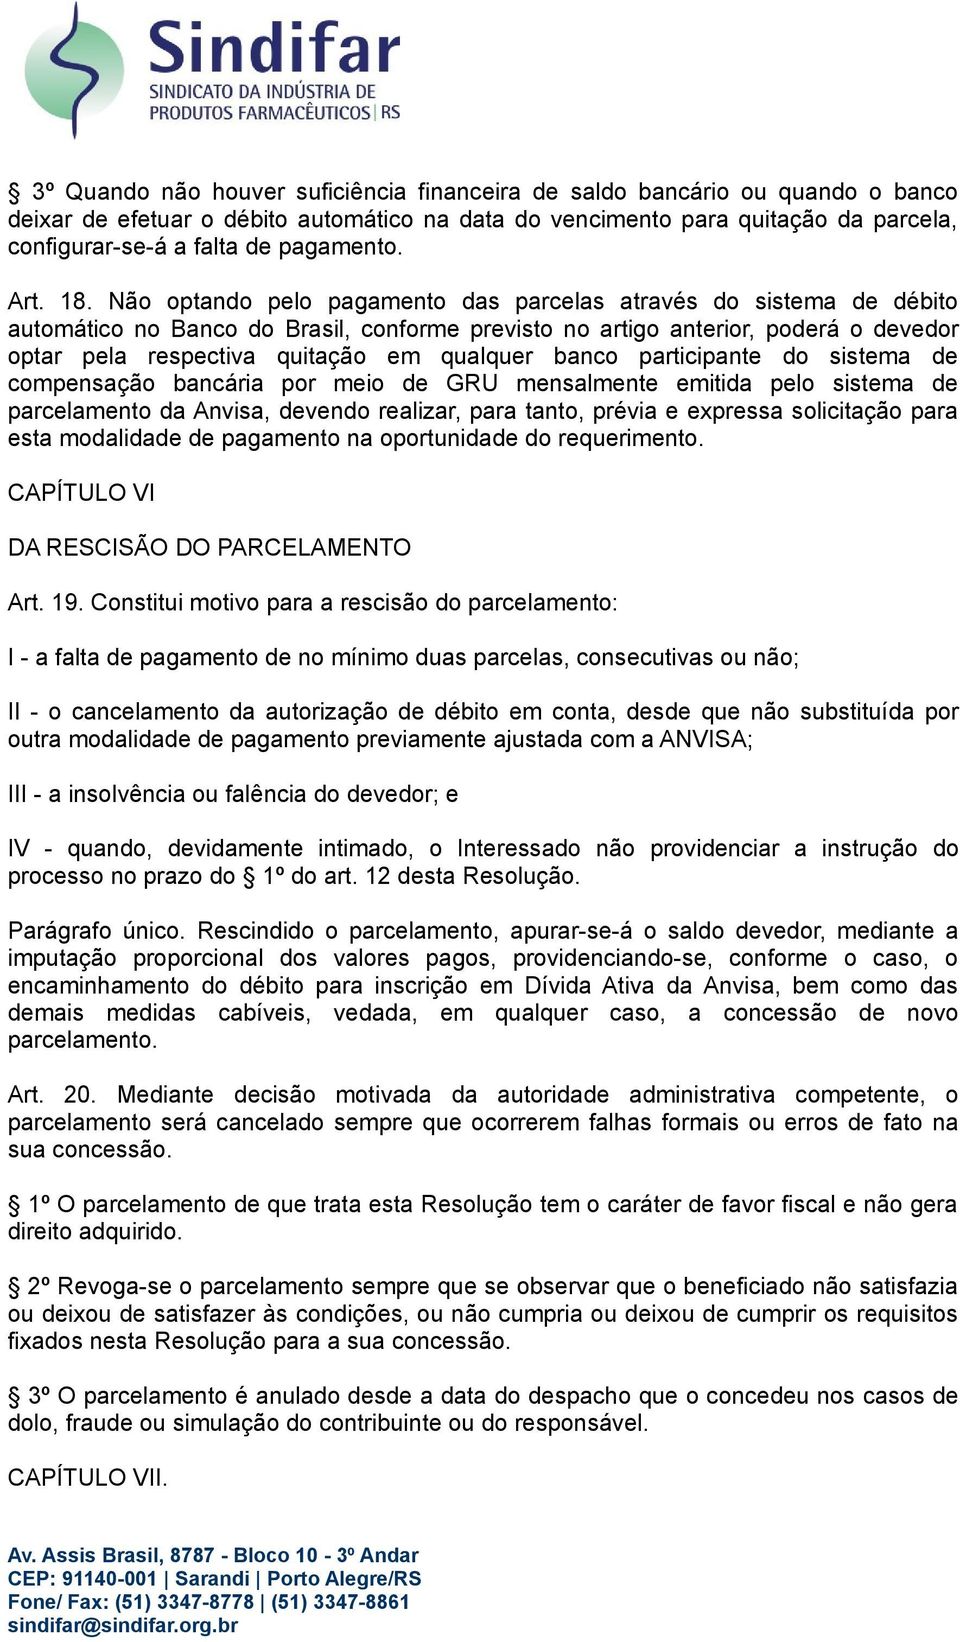 Não optando pelo pagamento das parcelas através do sistema de débito automático no Banco do Brasil, conforme previsto no artigo anterior, poderá o devedor optar pela respectiva quitação em qualquer